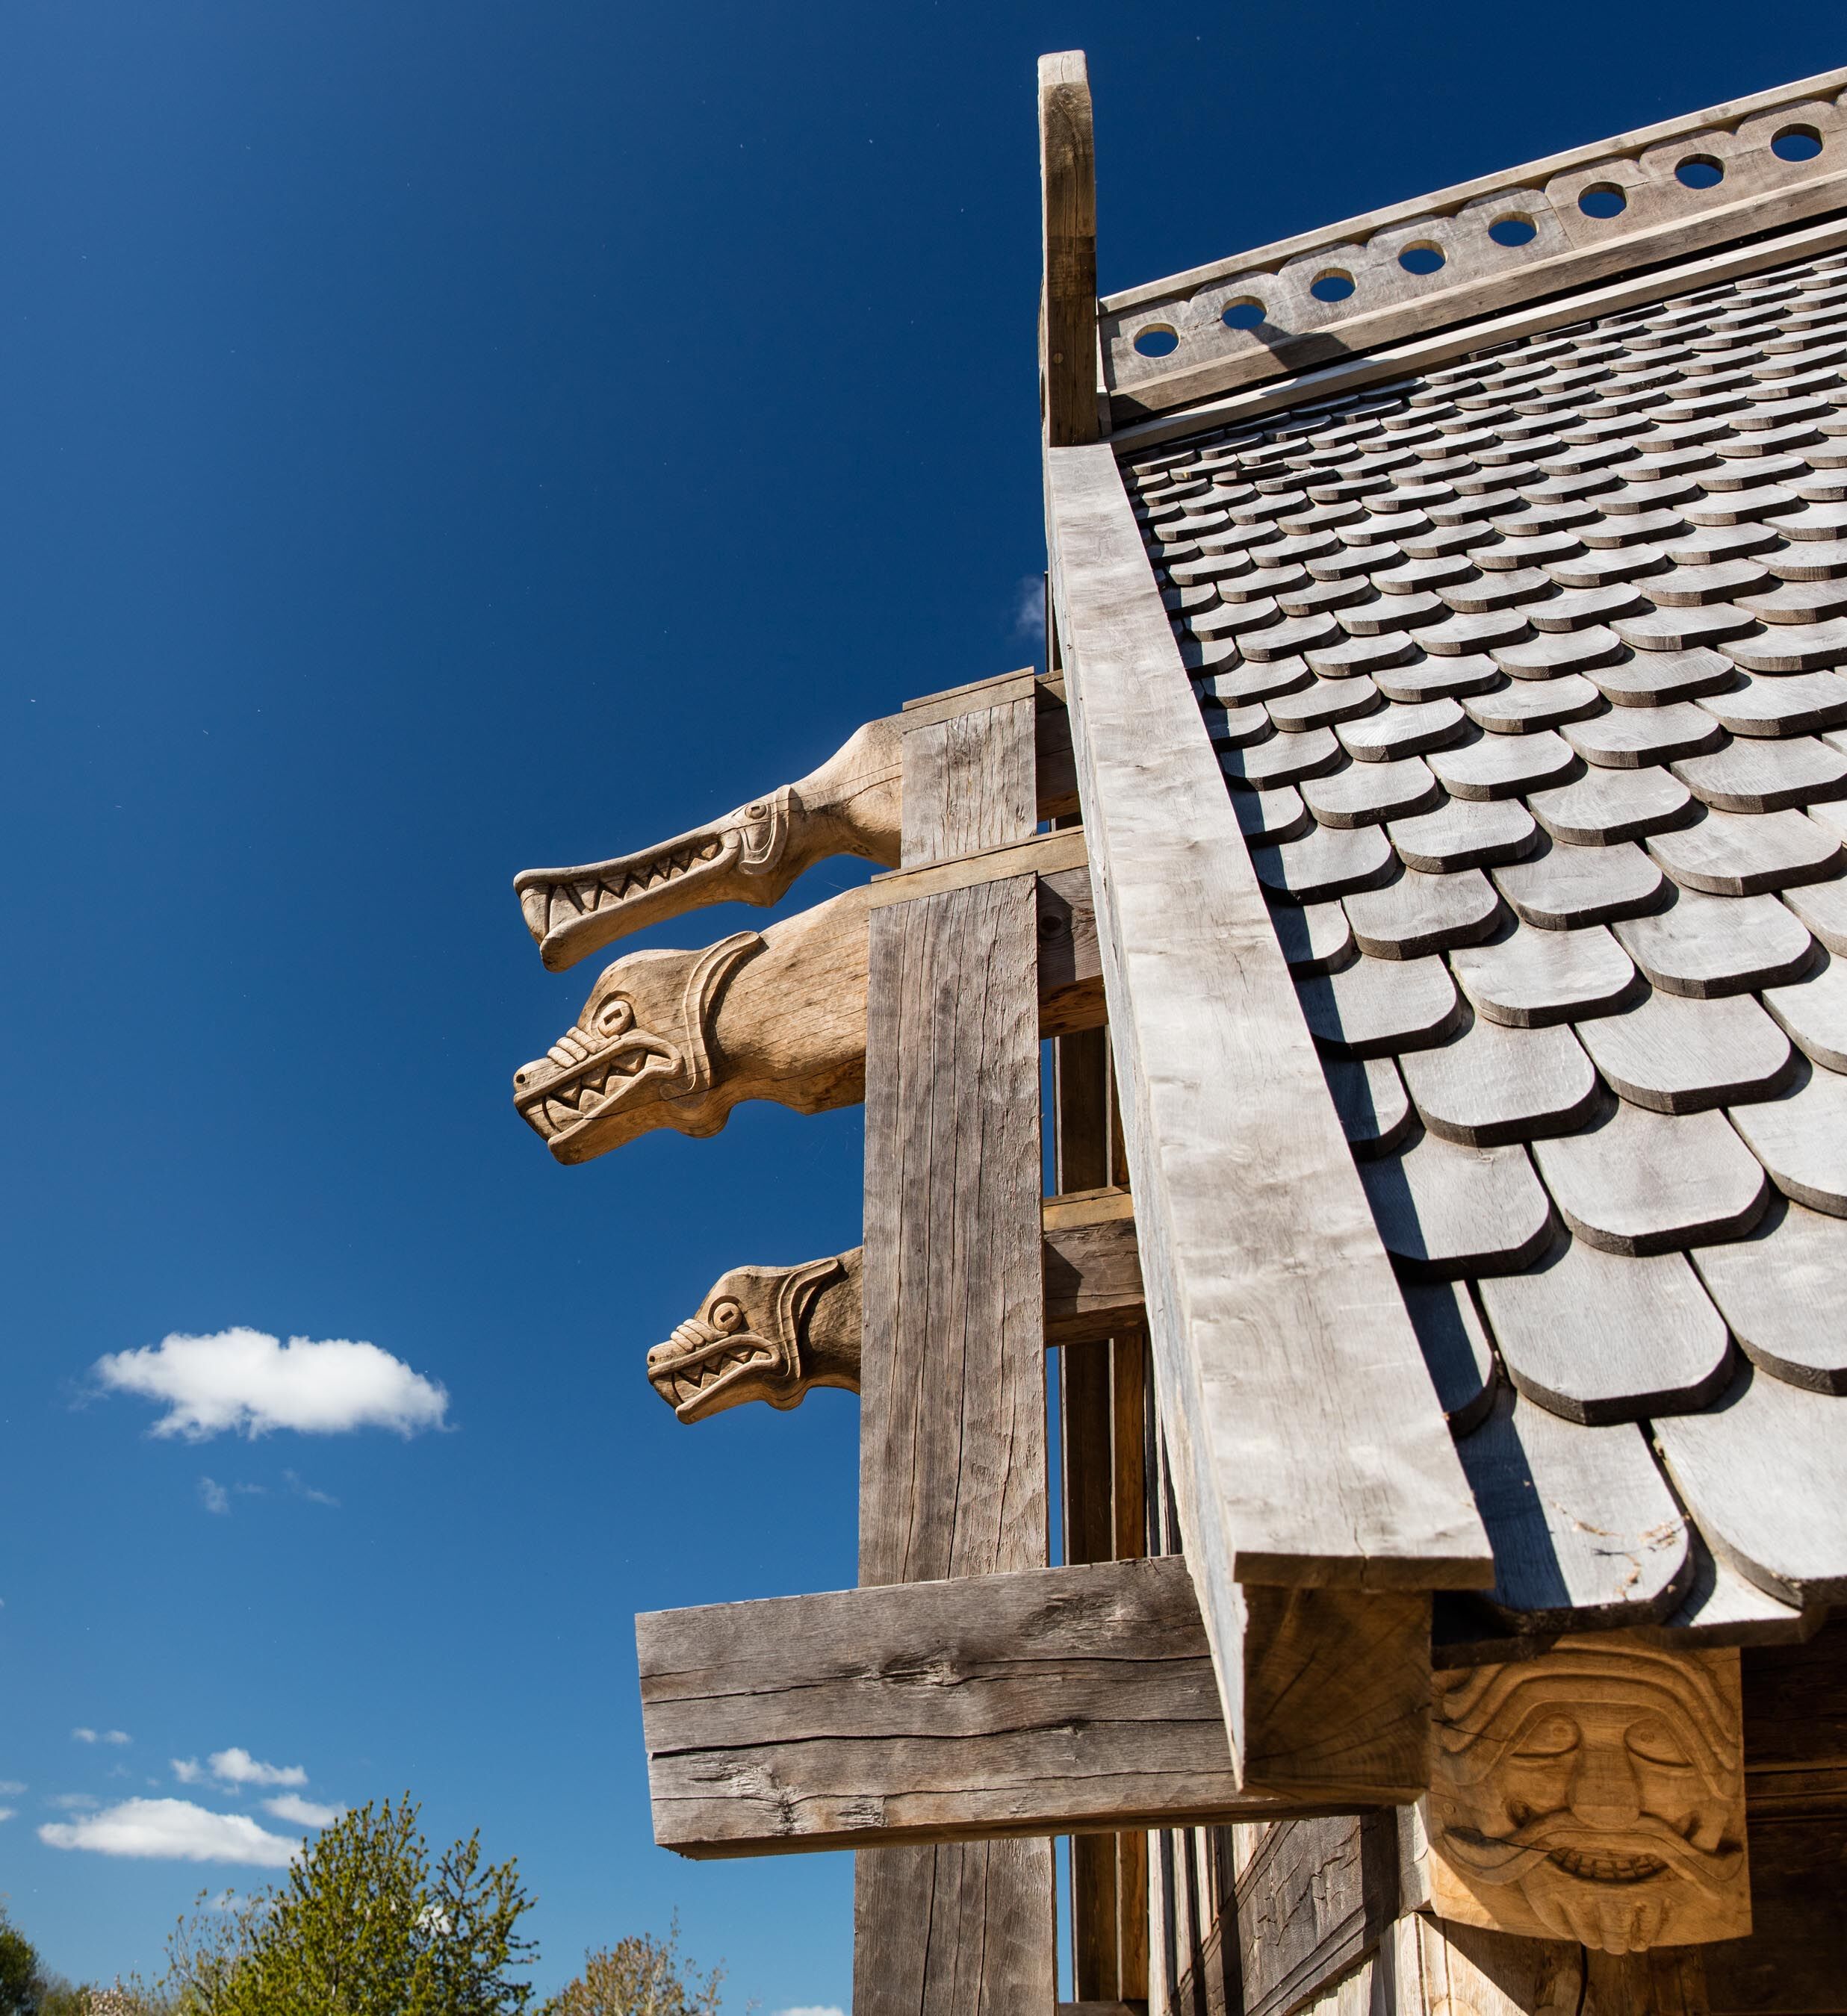  Bygningen er opført med vikingernes byggemetoder, håndværk og konstruktionslogik. Foto: Sagnlandet Lejre 